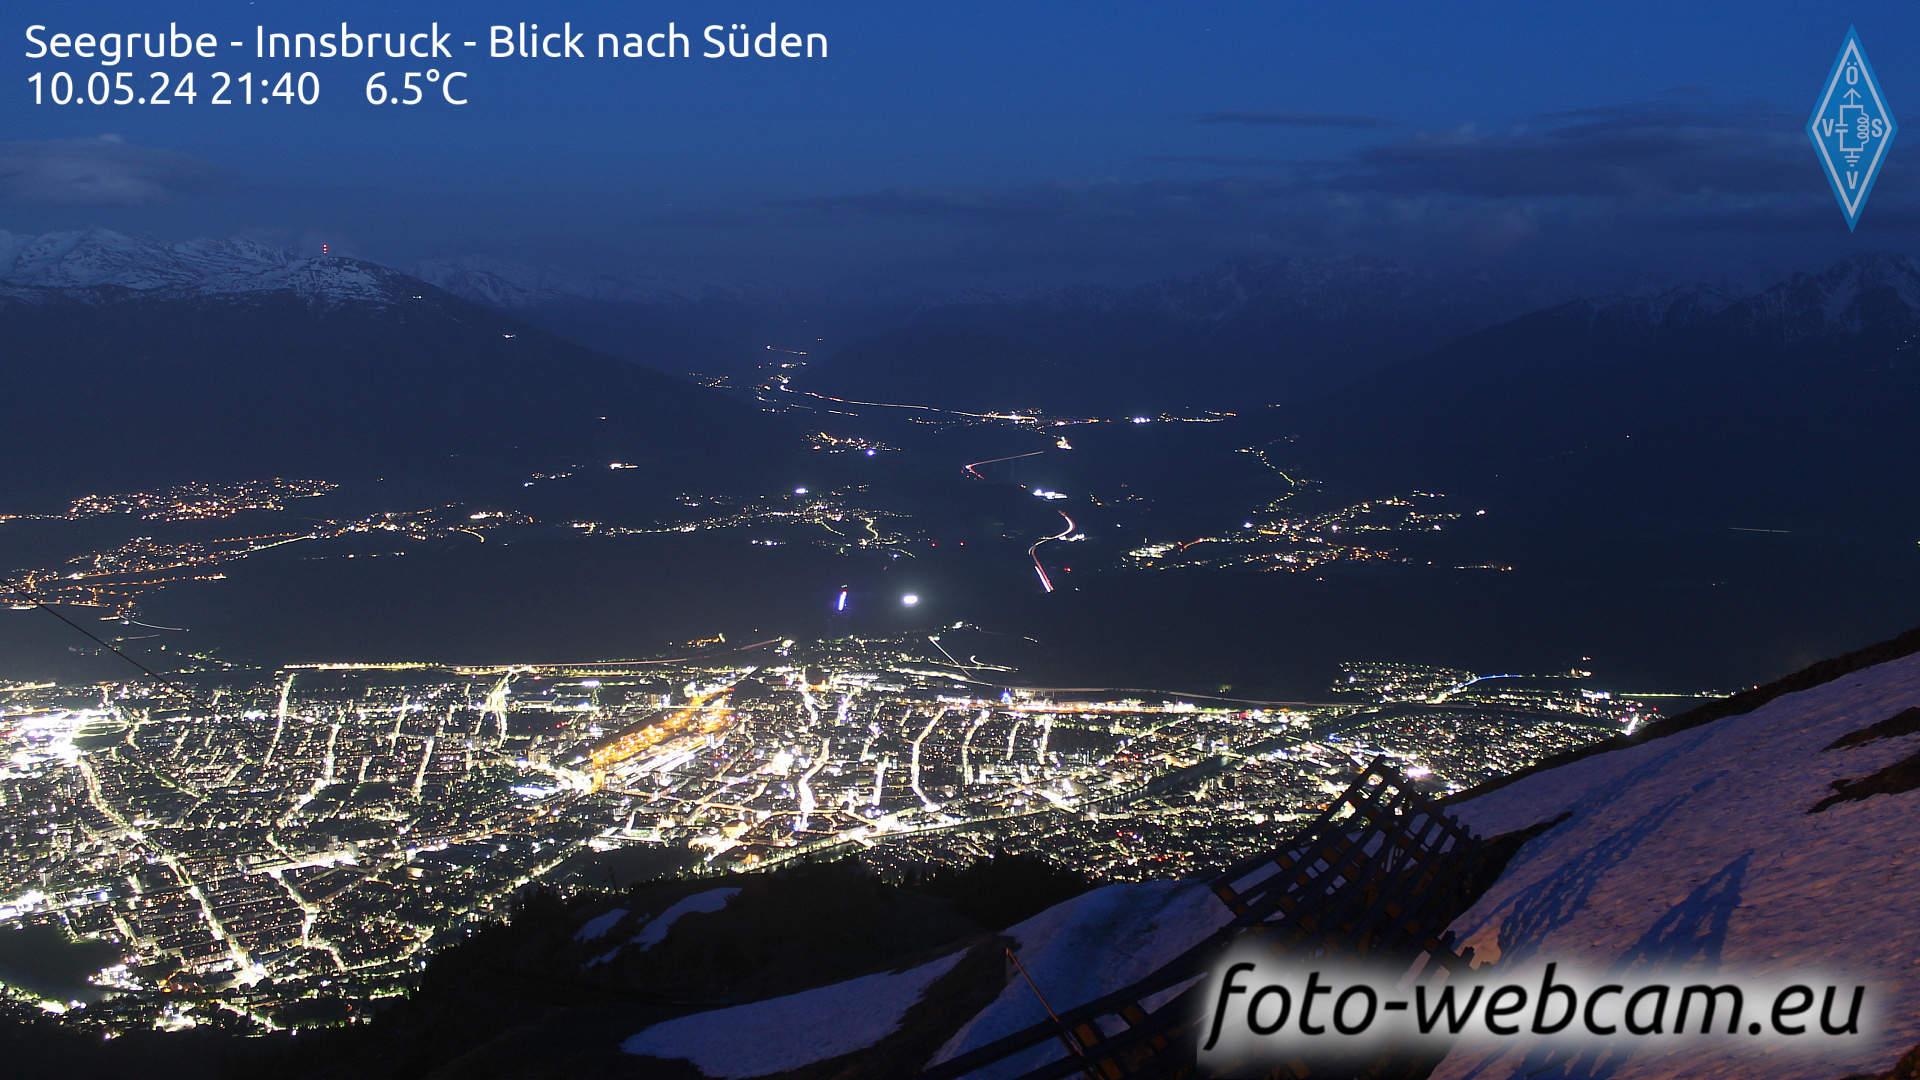 Innsbruck Do. 21:48